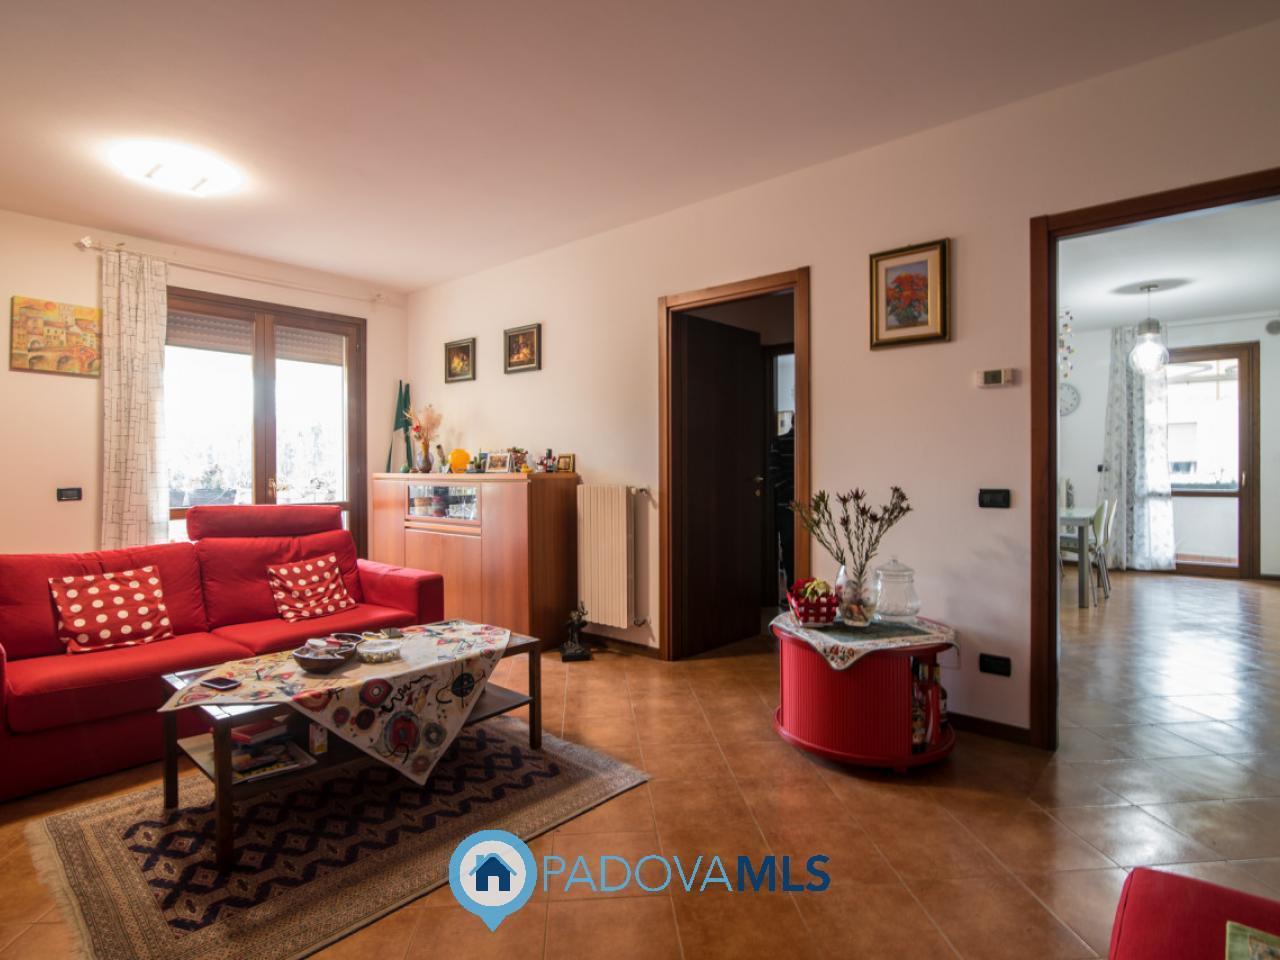 Appartamento in vendita a Montegrotto Terme, 5 locali, prezzo € 200.000 | PortaleAgenzieImmobiliari.it